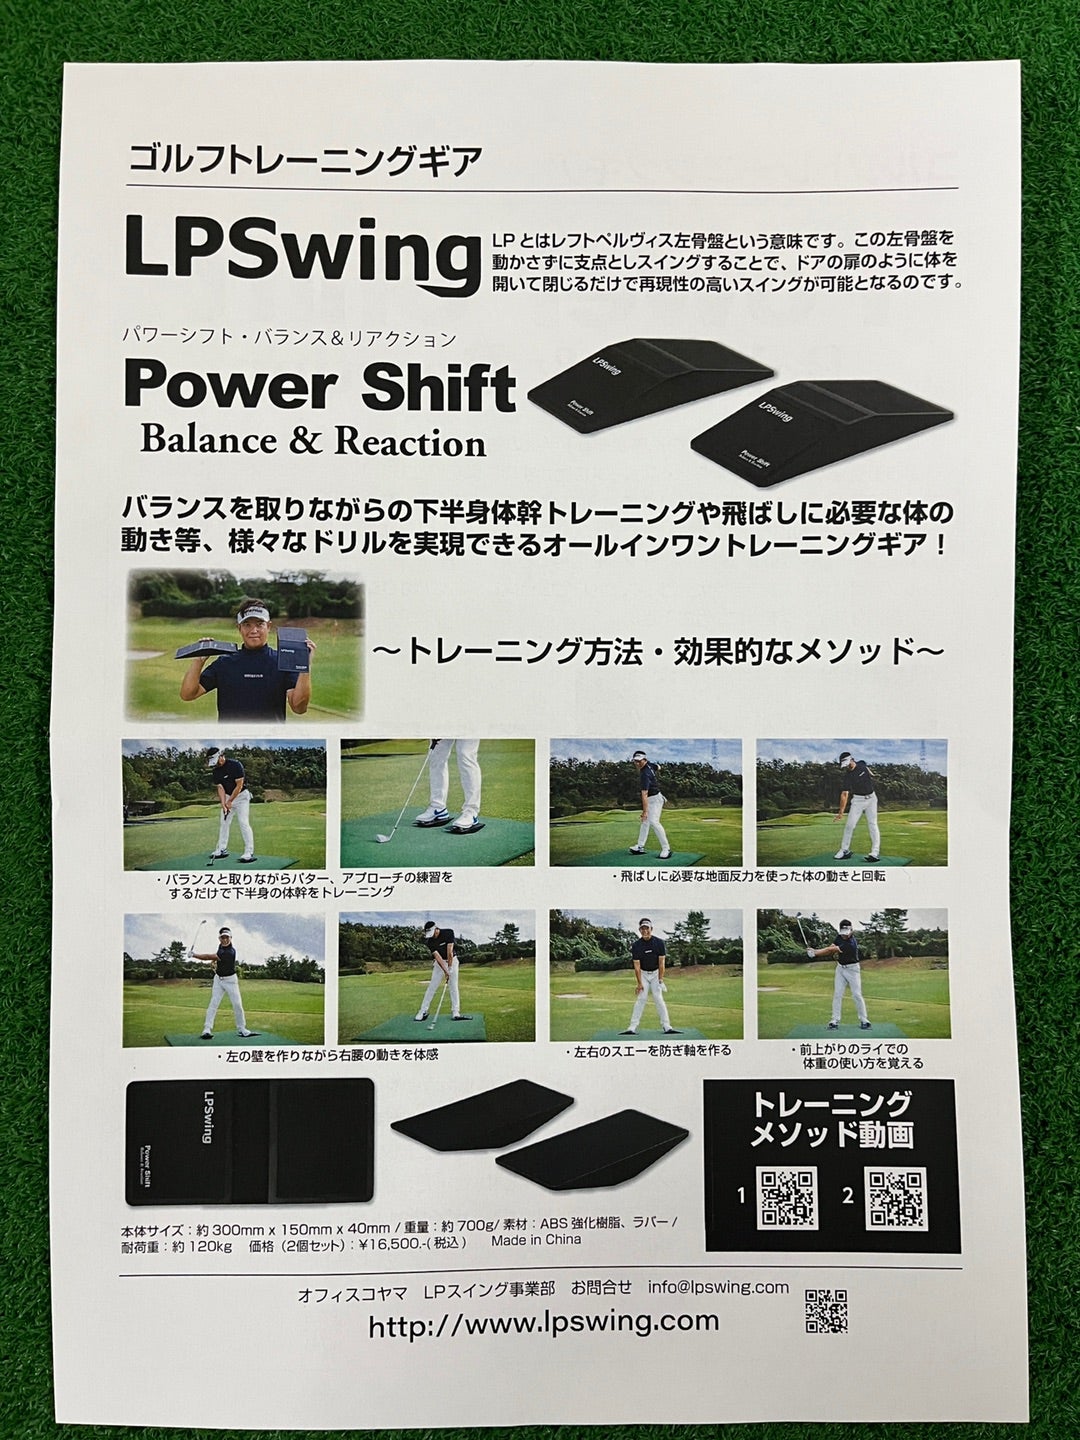 LPSwing Power Shift | マスター服部のうんちくブログ